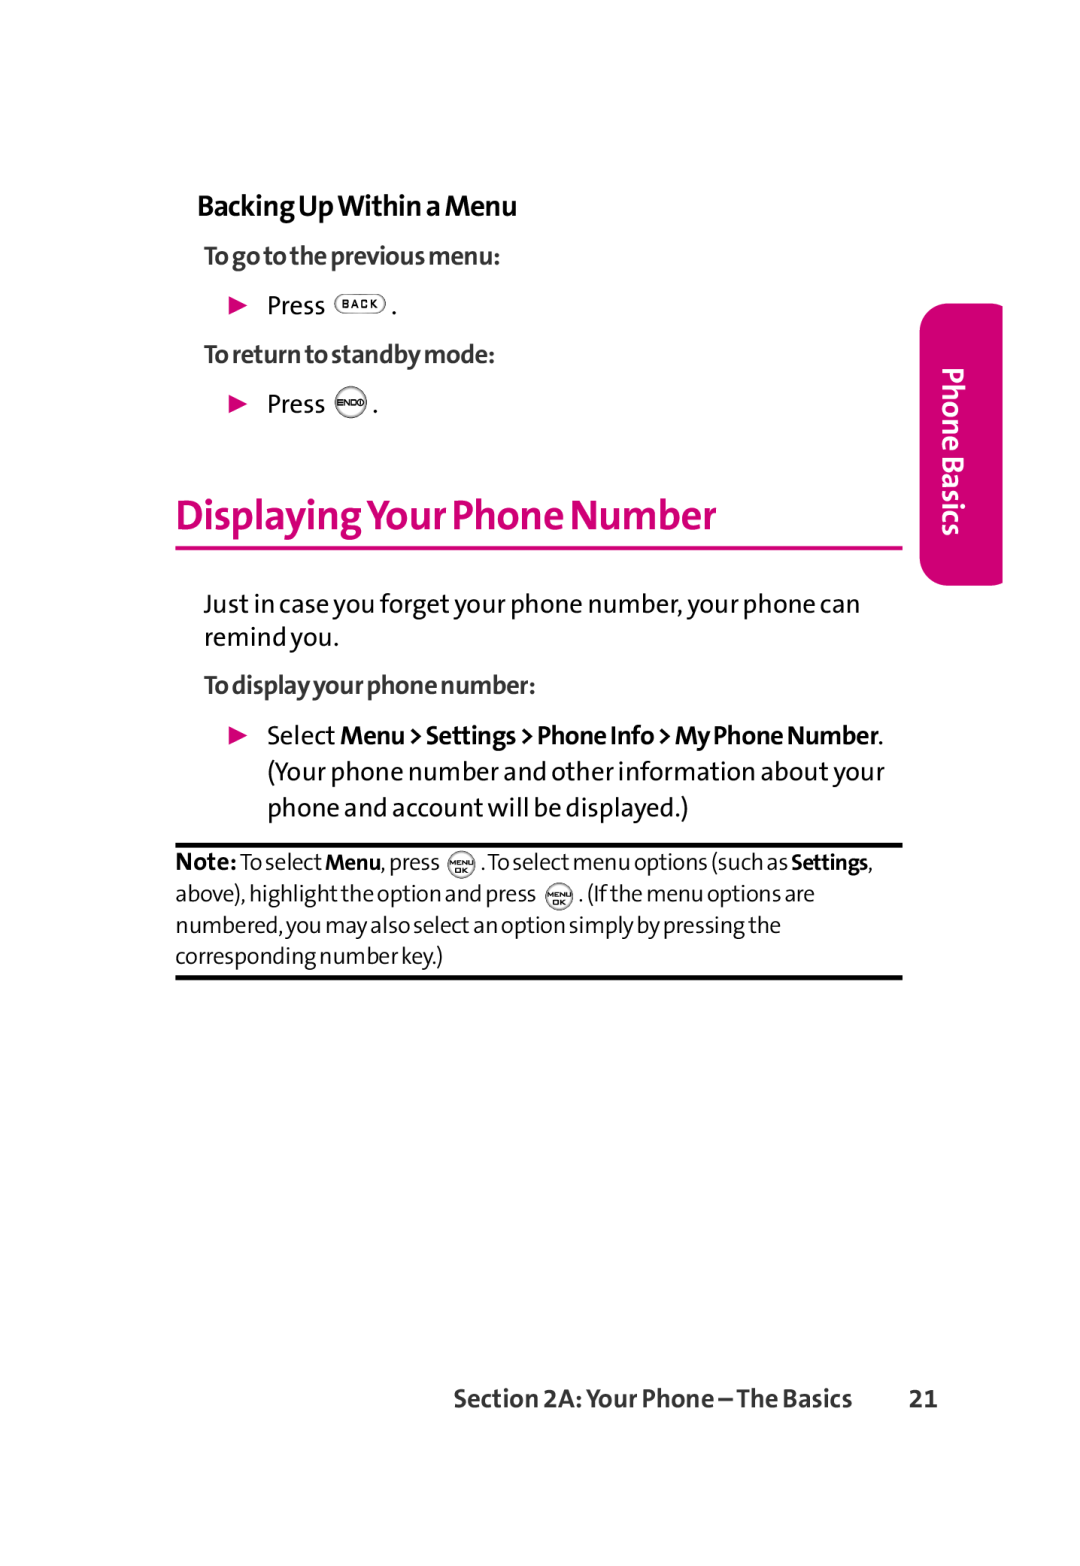 LG Electronics 350 manual DisplayingYour Phone Number, BackingUpWithinaMenu, Togotothepreviousmenu, Toreturntostandbymode 